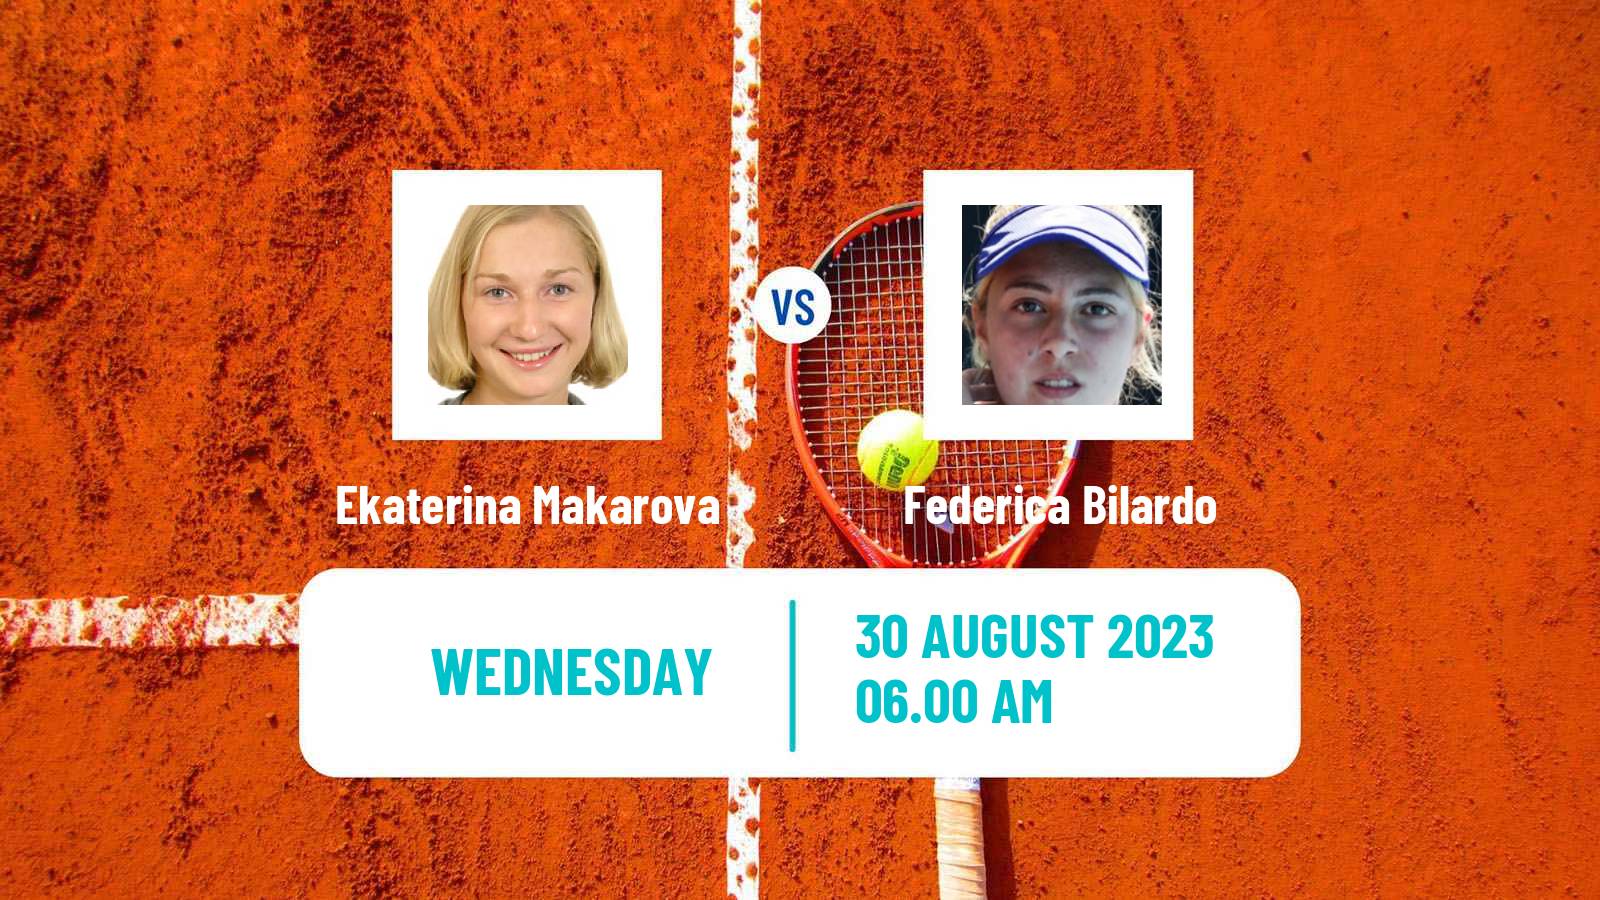 Tennis ITF W40 Oldenzaal Women Ekaterina Makarova - Federica Bilardo